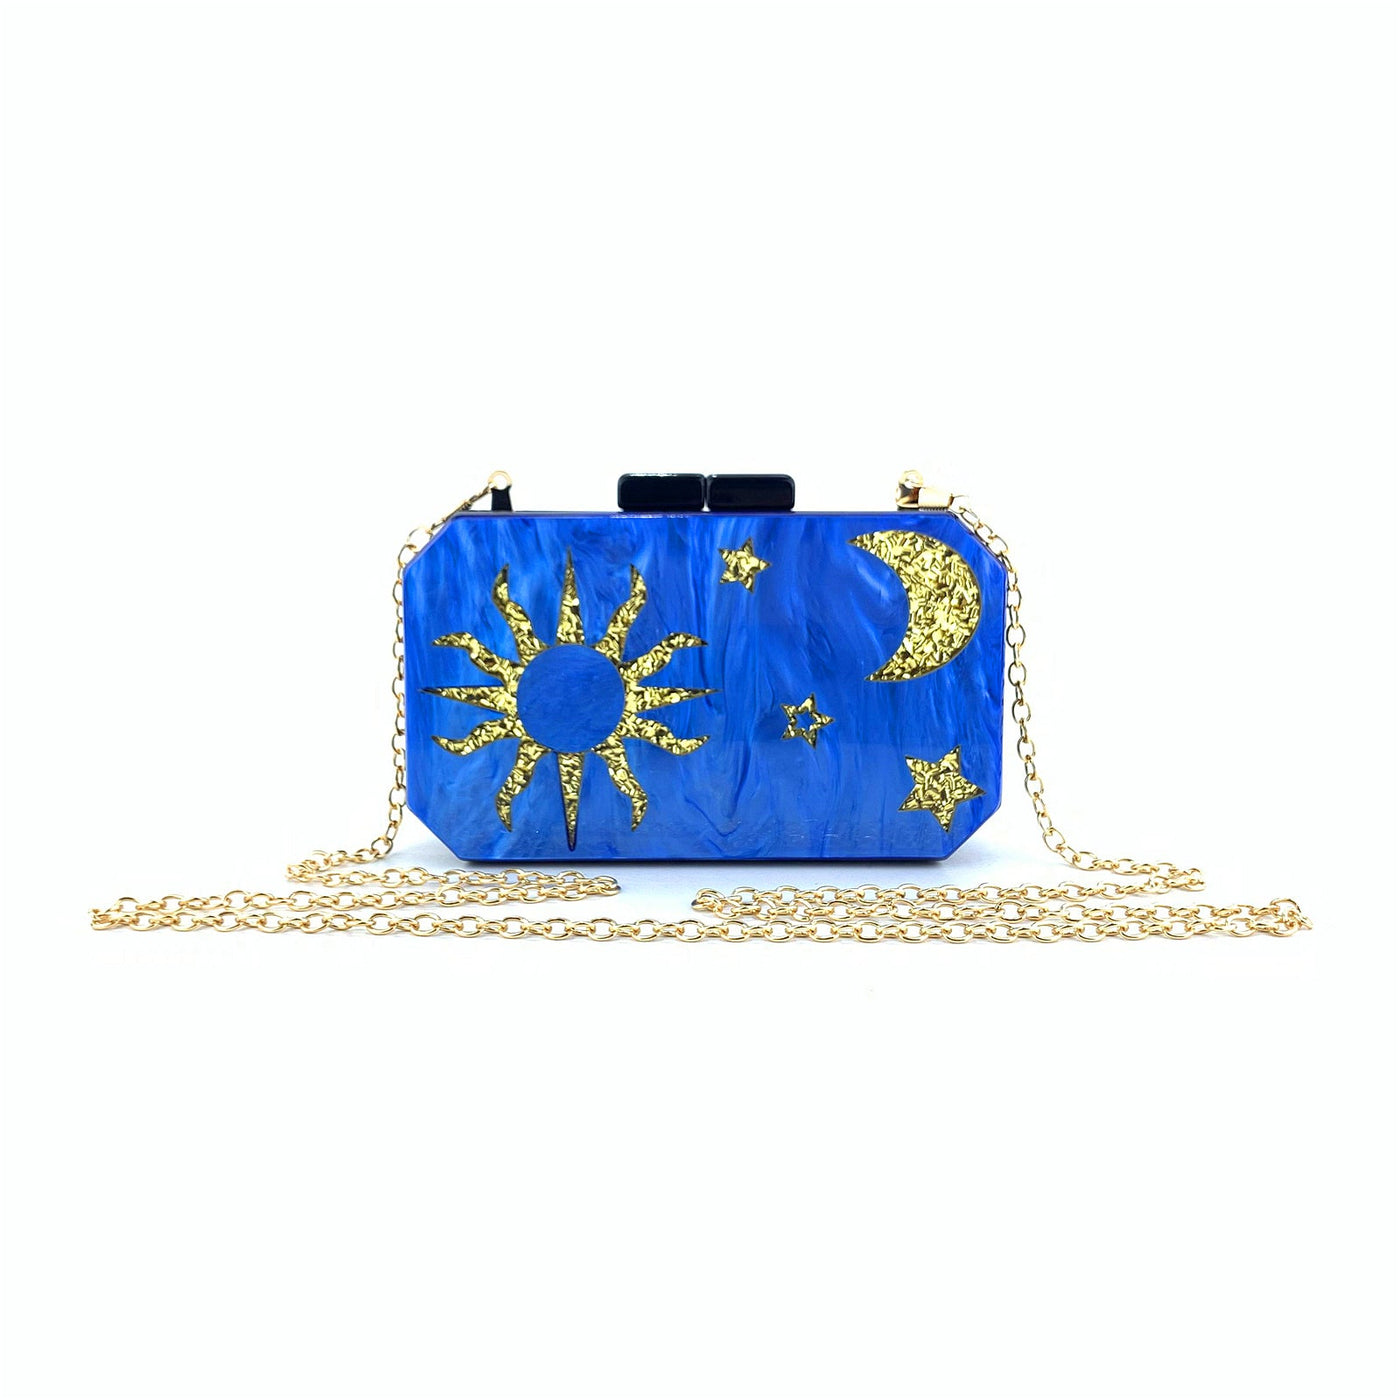 Acrylic moon handbag